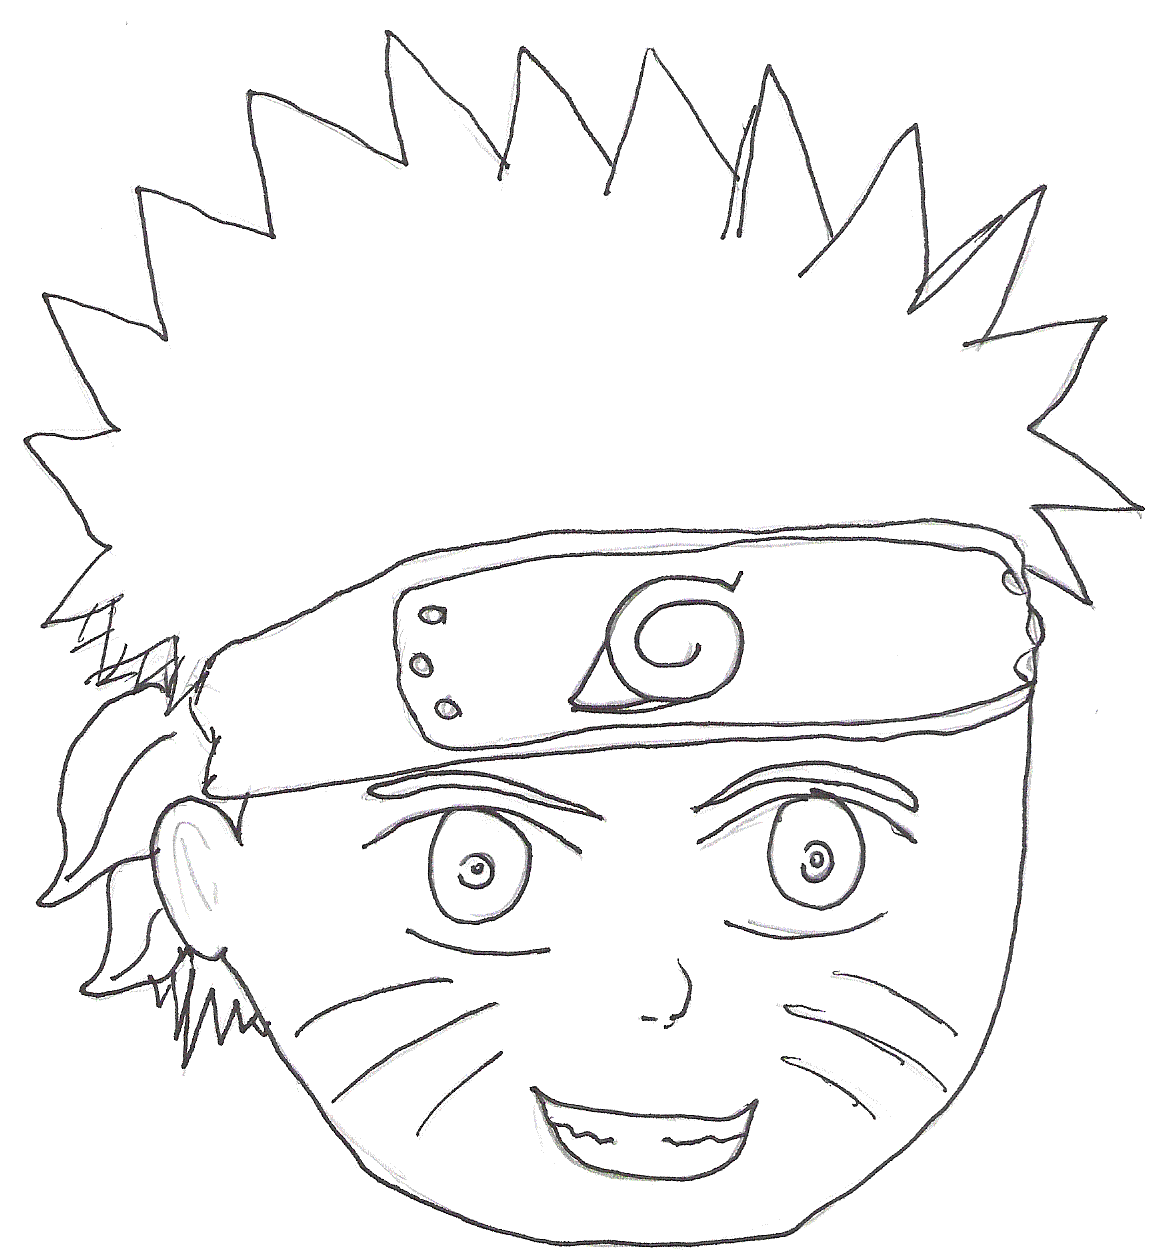 Naruto by SasukesChick